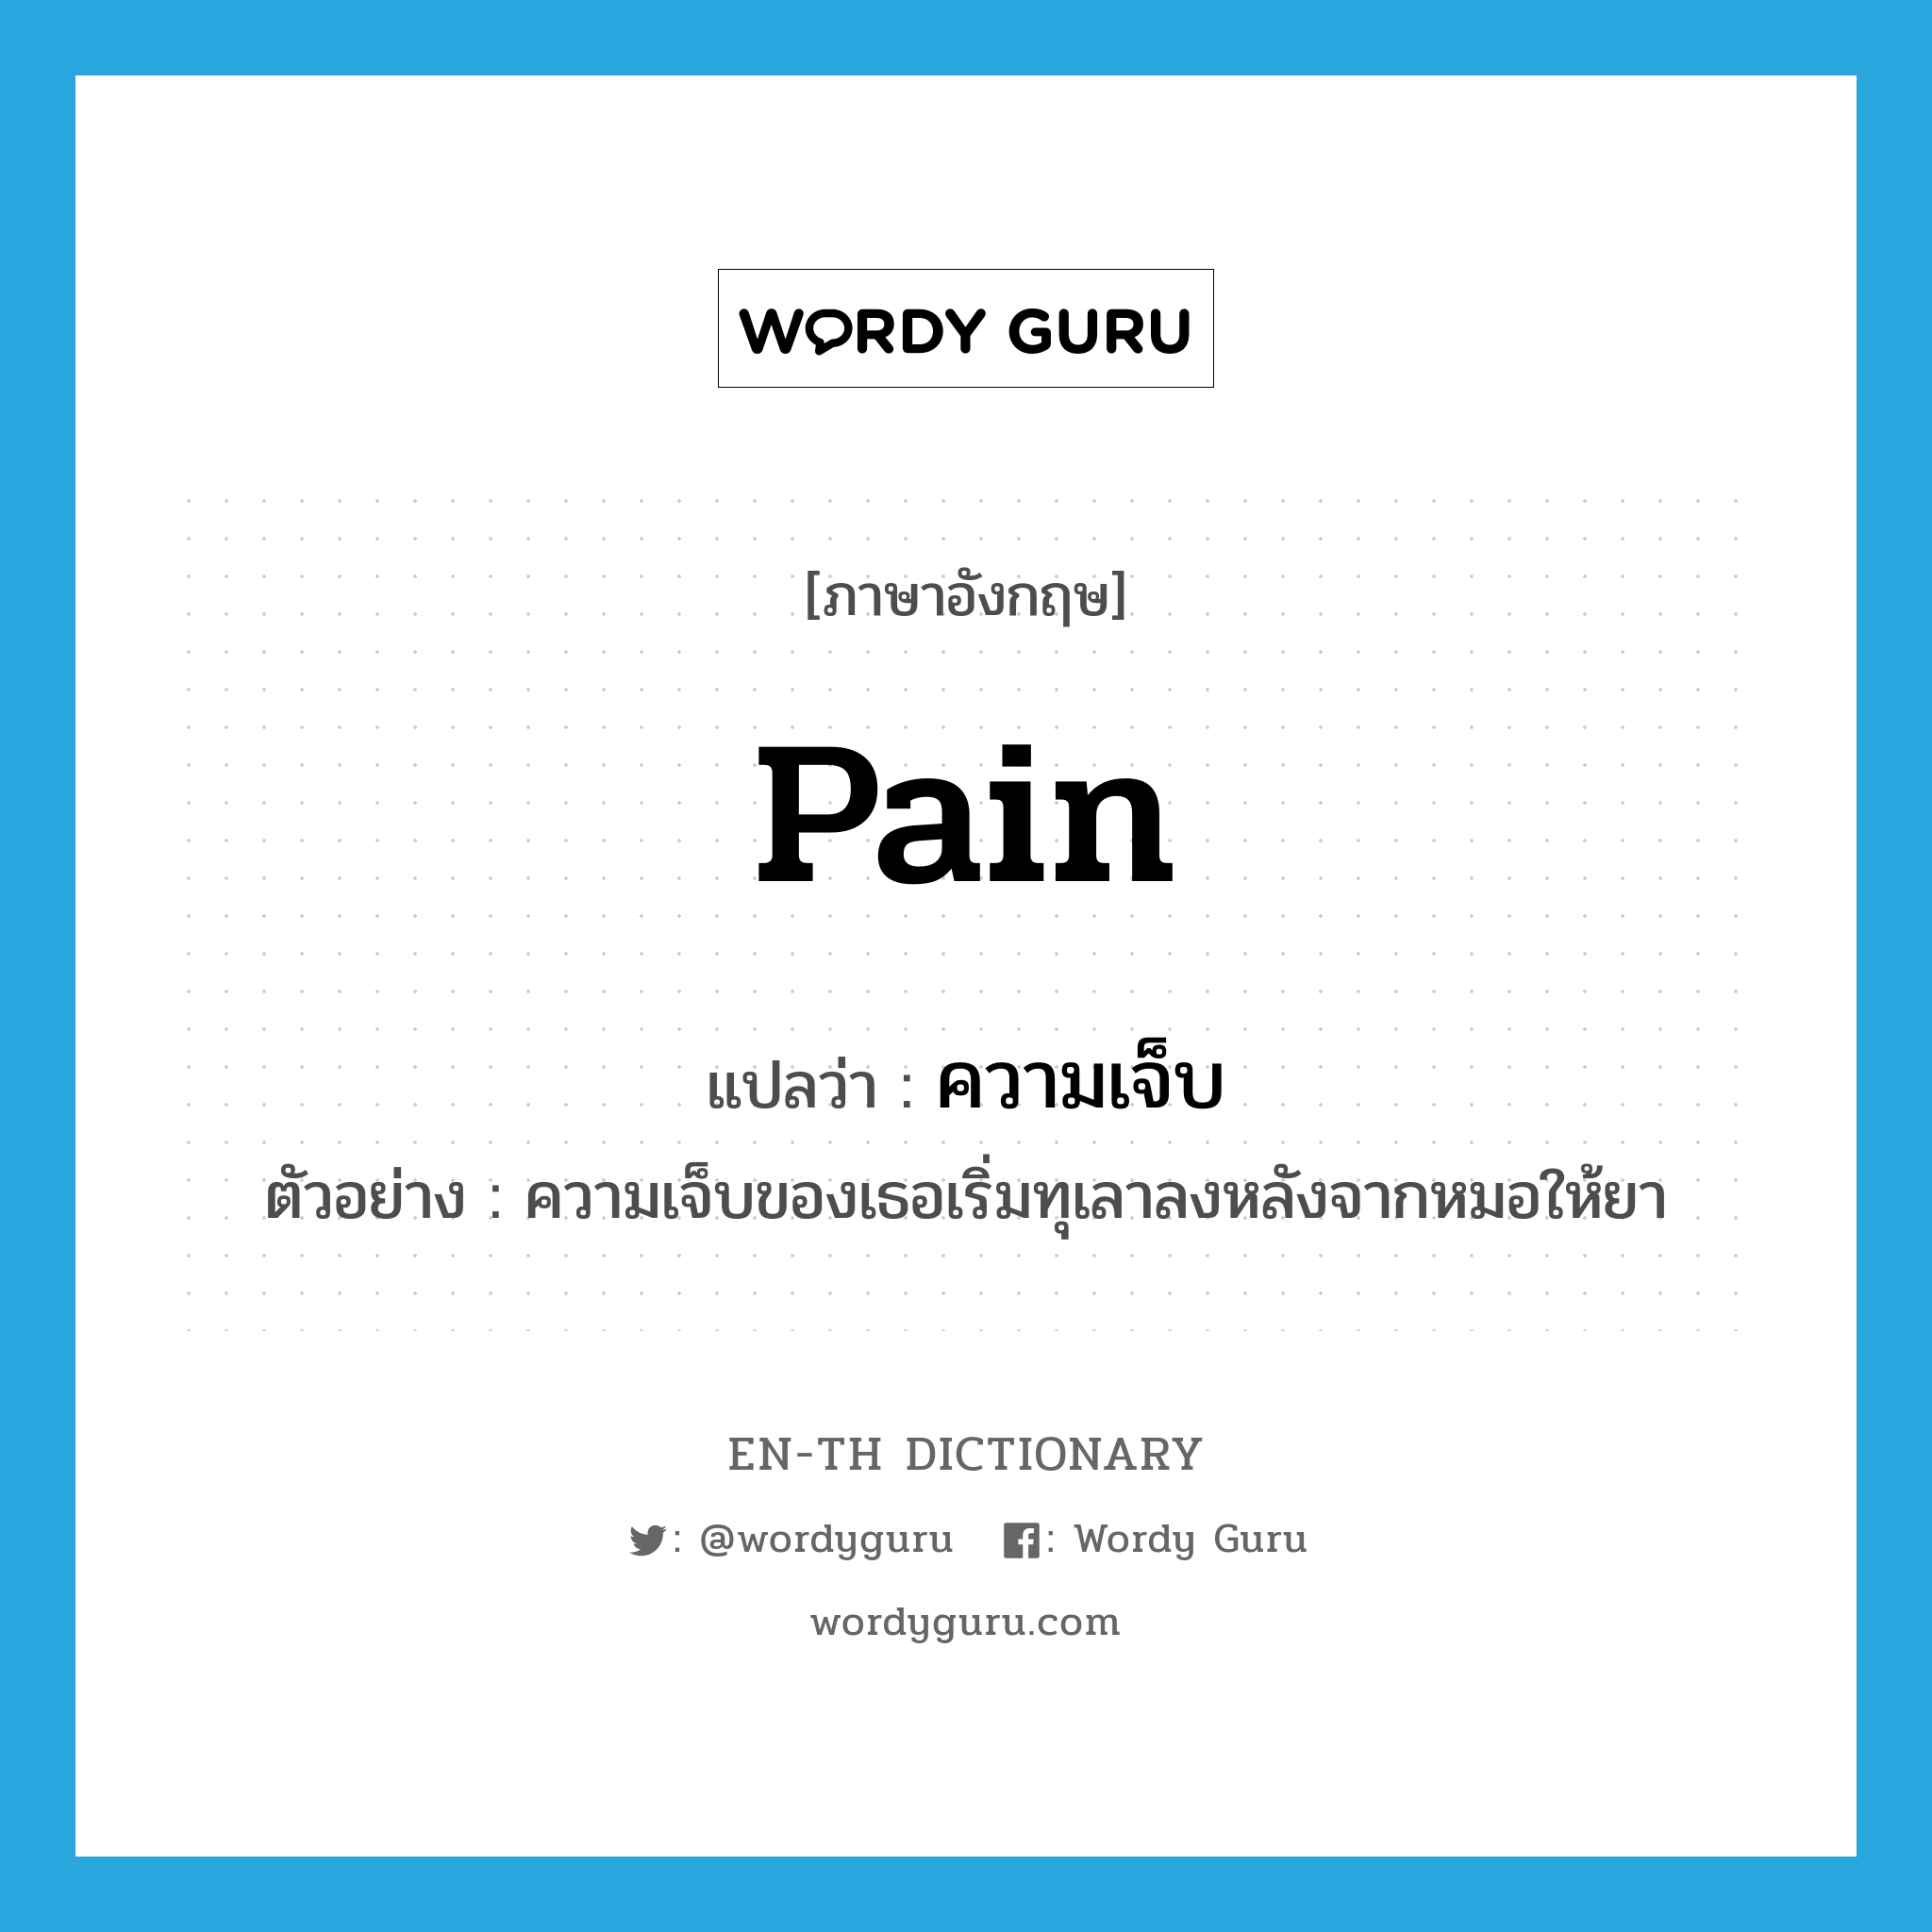 pain แปลว่า?, คำศัพท์ภาษาอังกฤษ pain แปลว่า ความเจ็บ ประเภท N ตัวอย่าง ความเจ็บของเธอเริ่มทุเลาลงหลังจากหมอให้ยา หมวด N